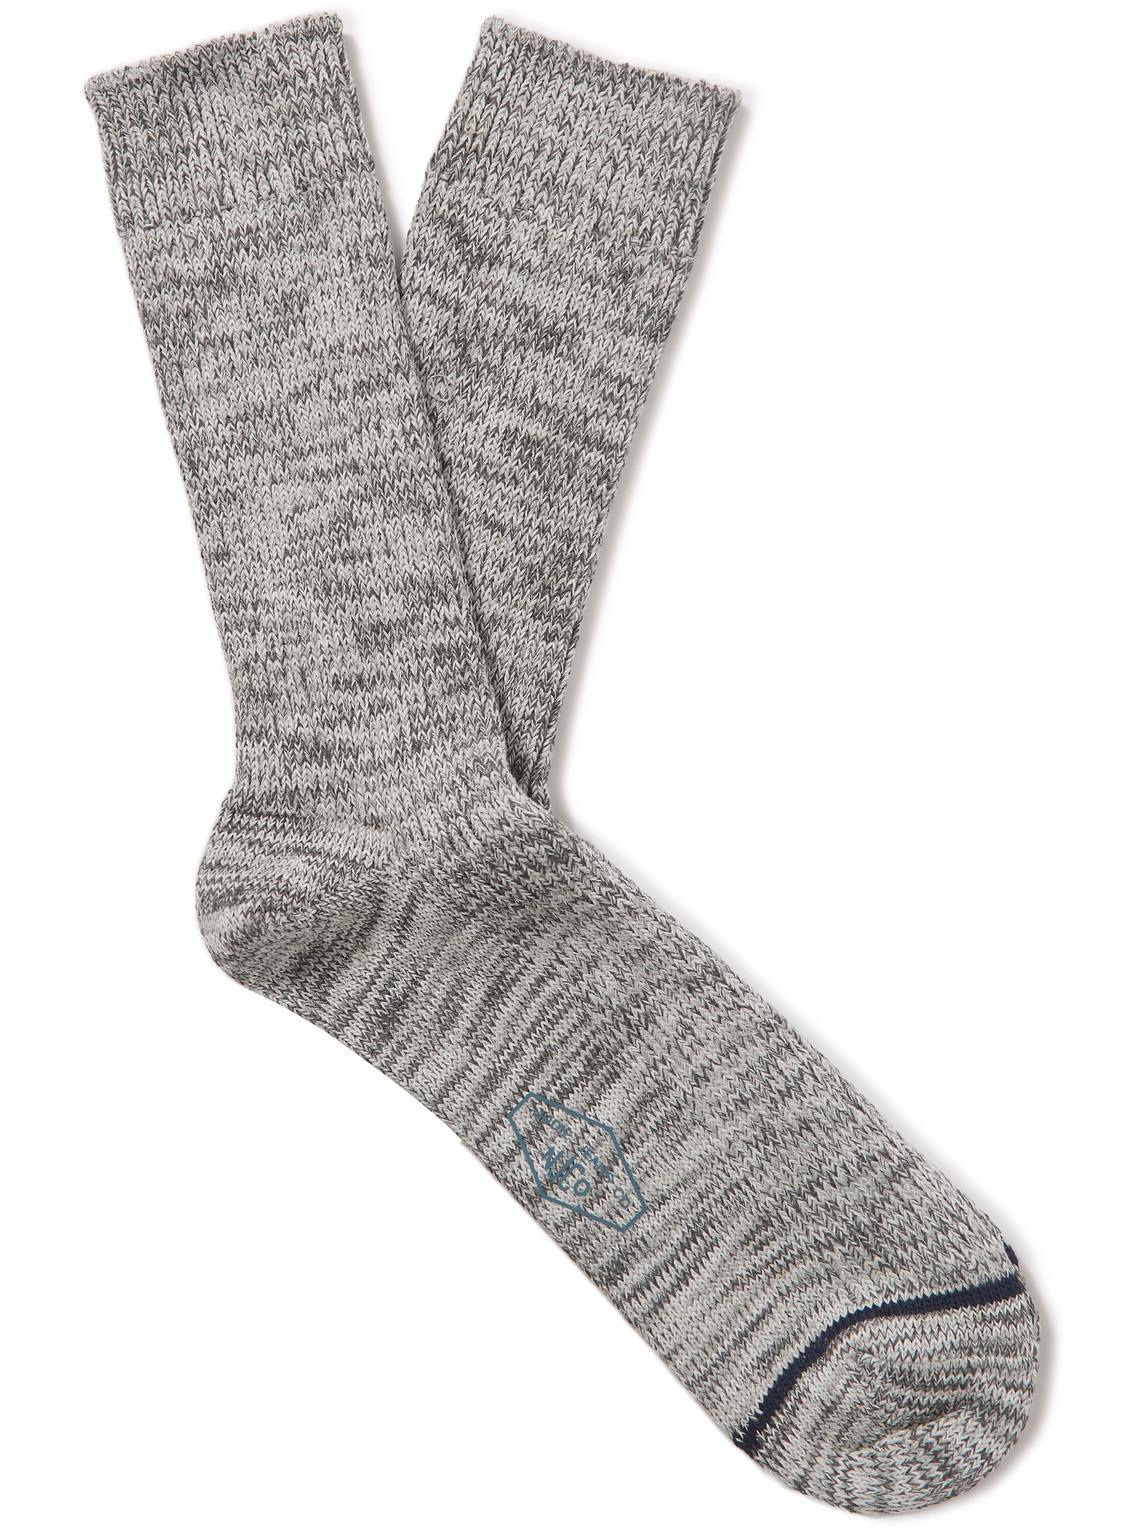 Nudie Jeans - Knitted Socks - Men - Gray von Nudie Jeans